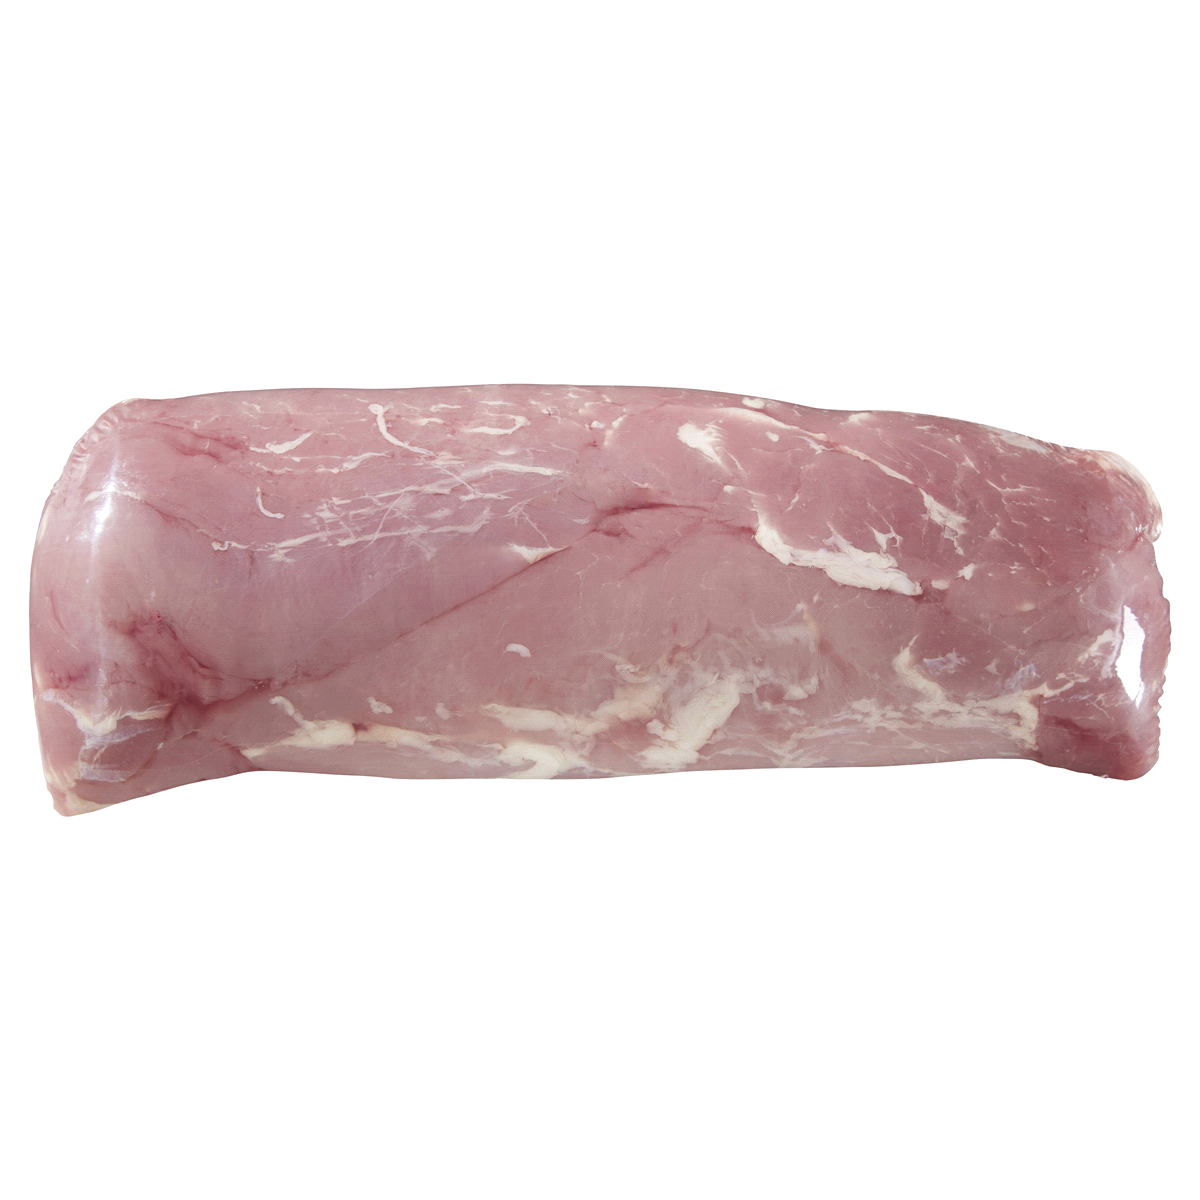 slide 1 of 1, Meijer All Natural Pork Tenderloin Whole, Boneless, per lb